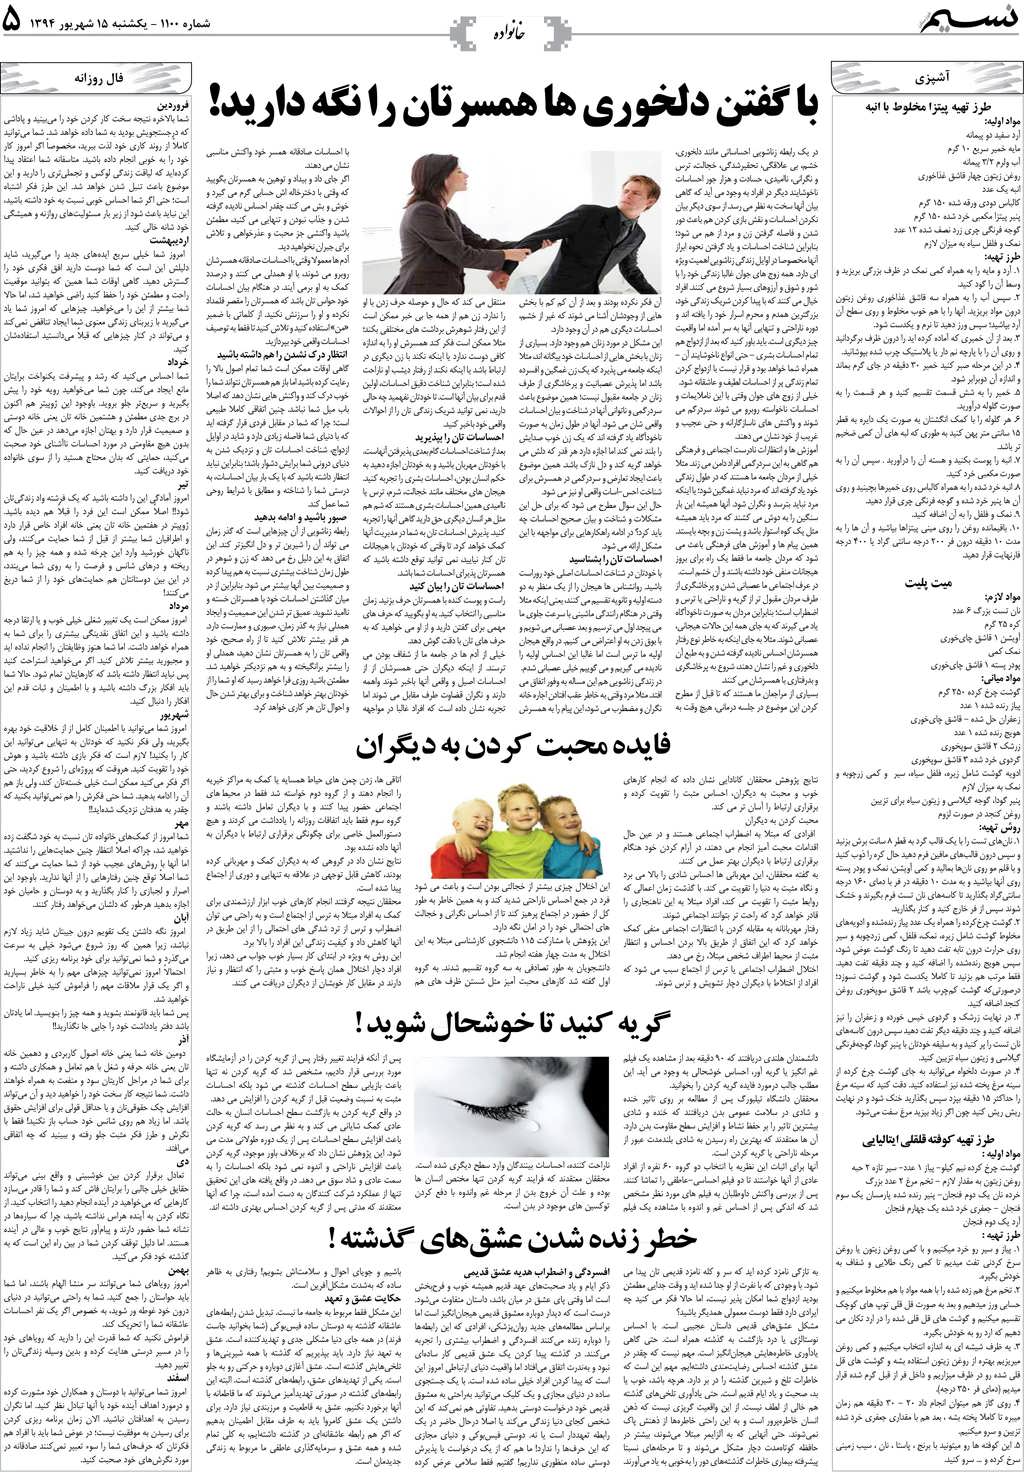 صفحه خانواده روزنامه نسیم شماره 1100